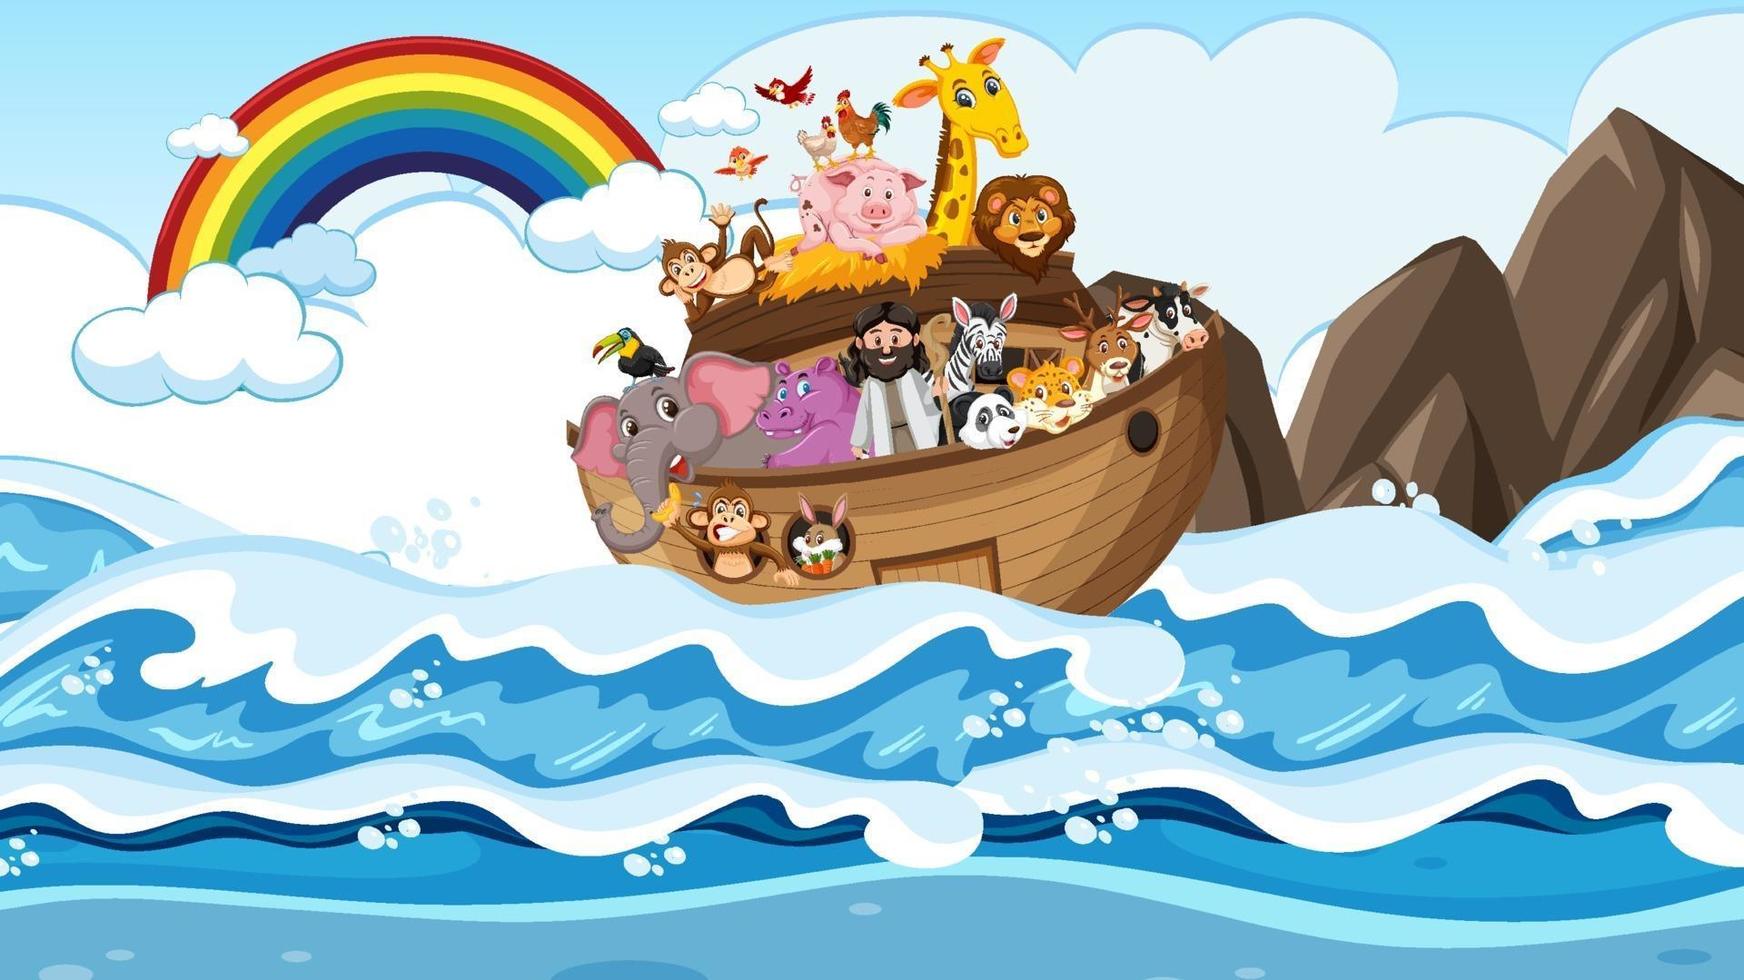 Noah Arche mit Tieren in der Ozeanszene vektor